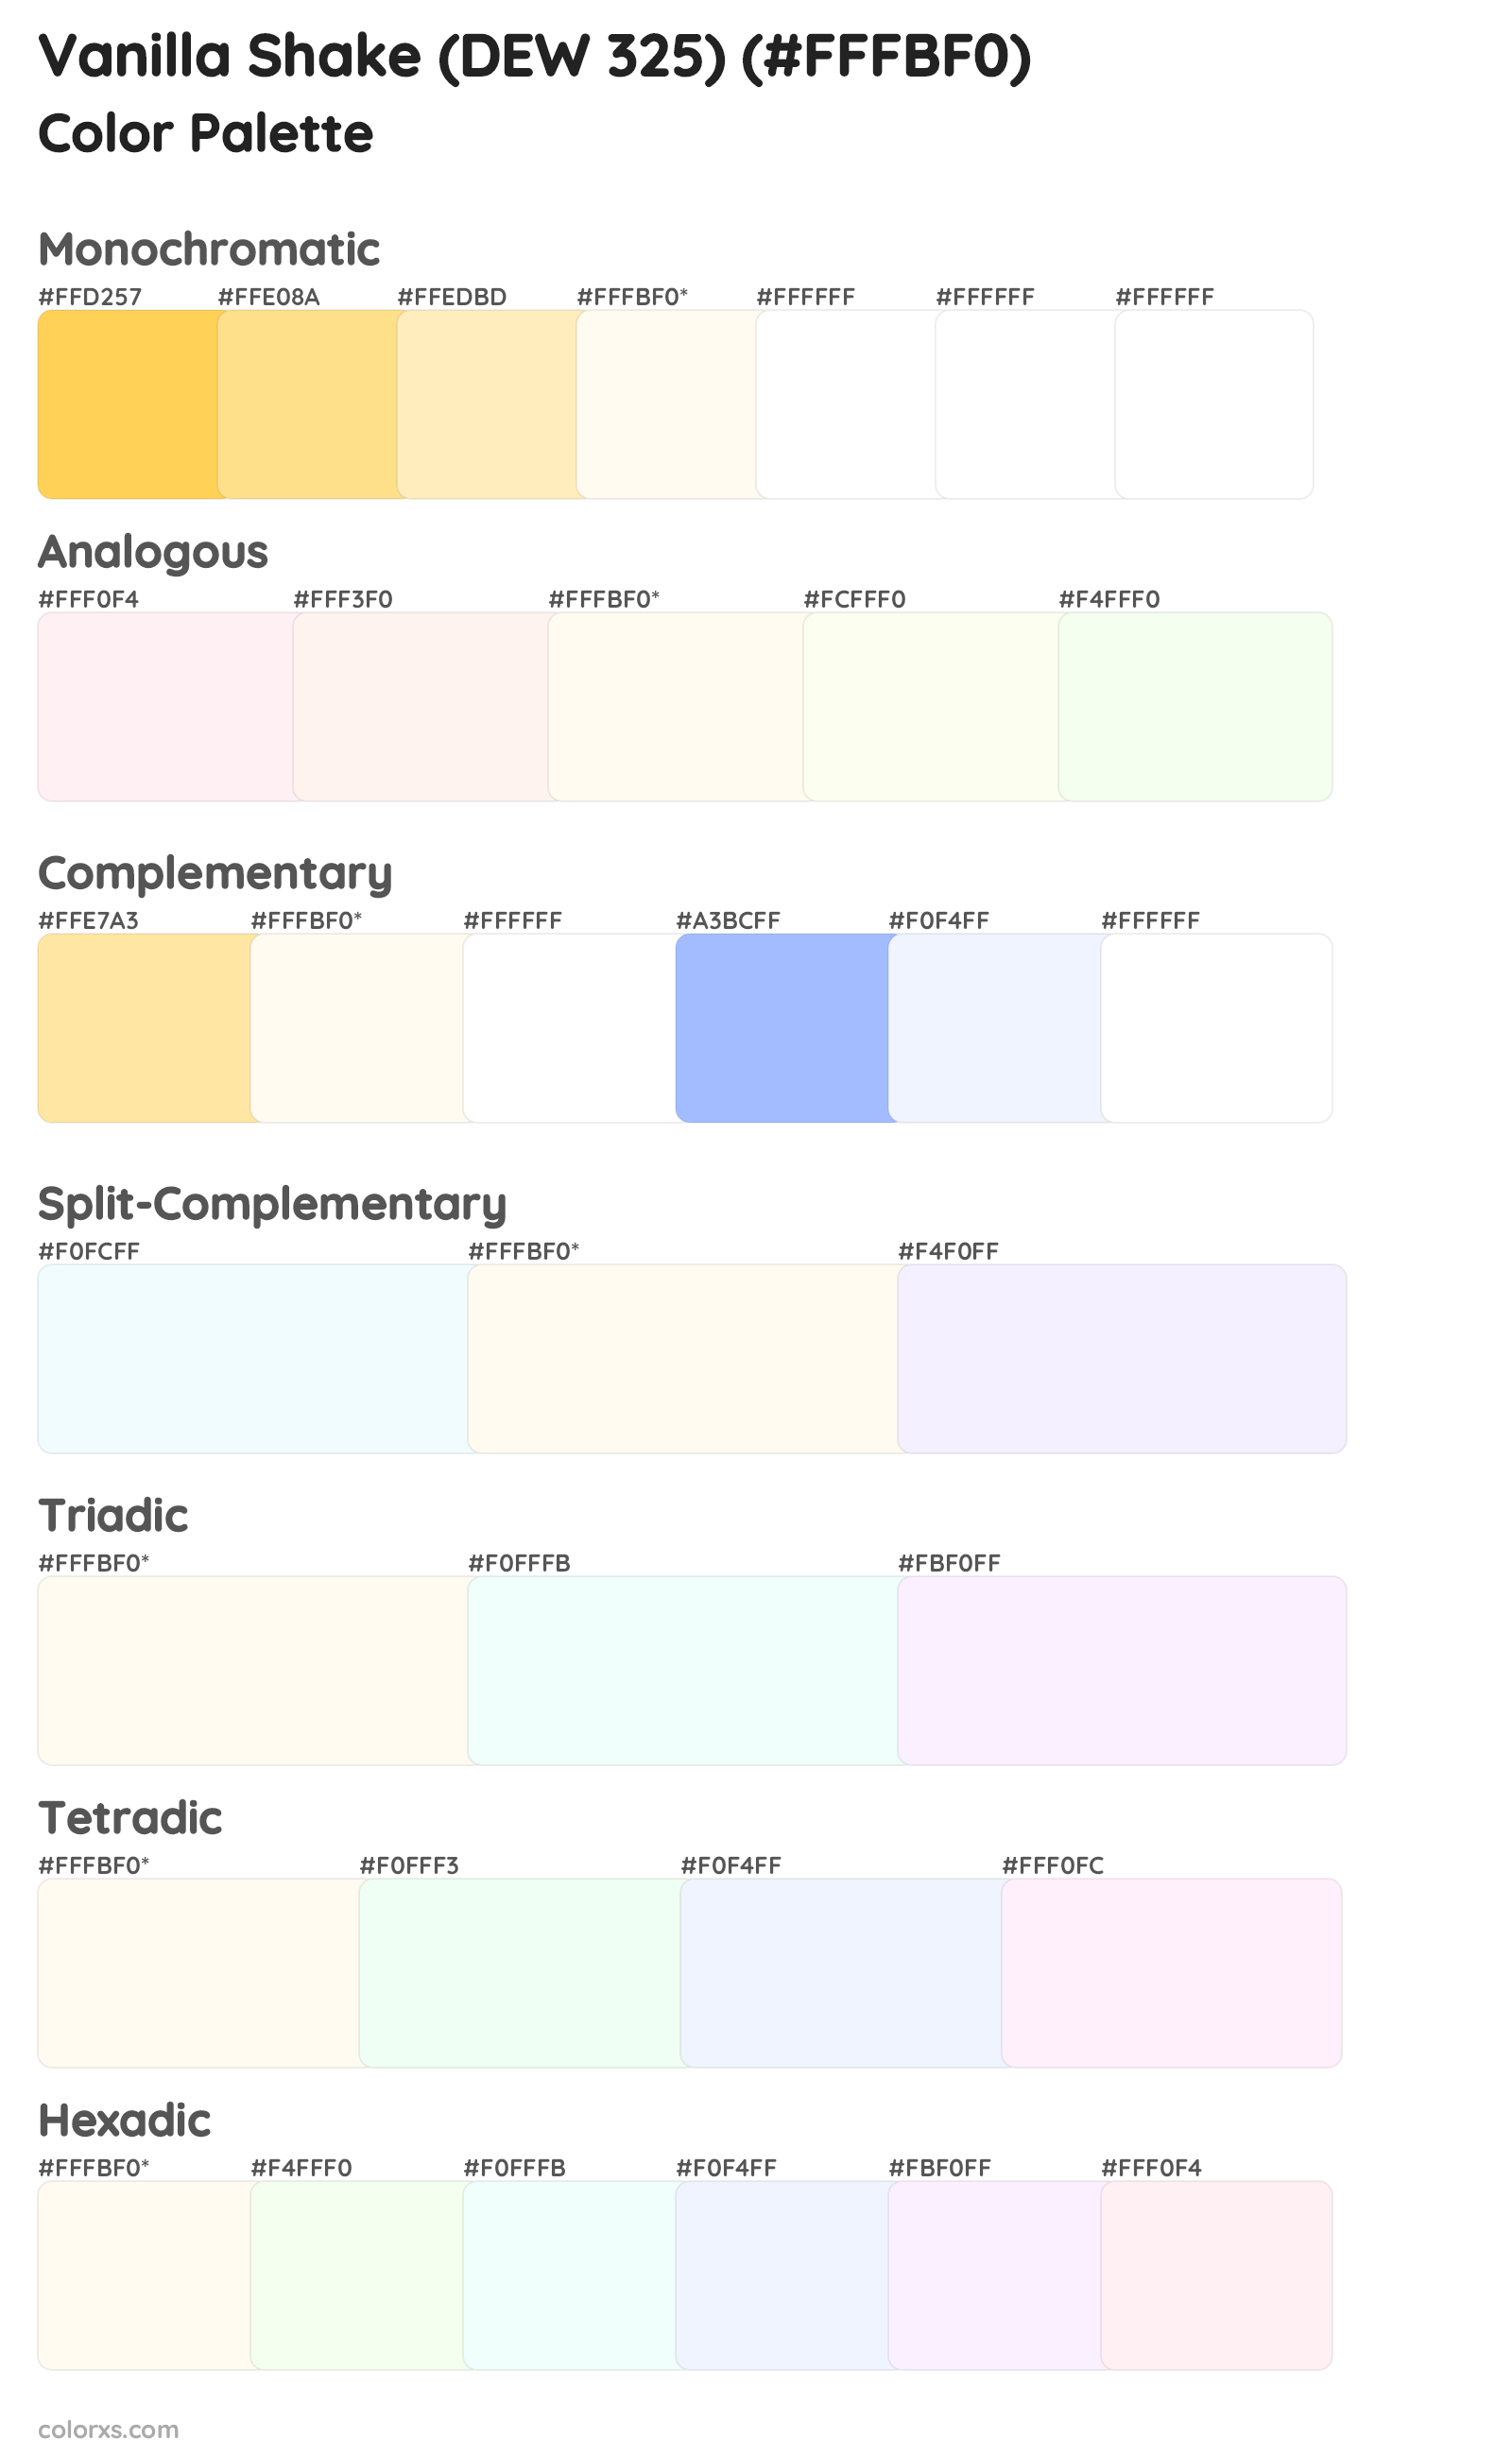 Vanilla Shake (DEW 325) Color Scheme Palettes